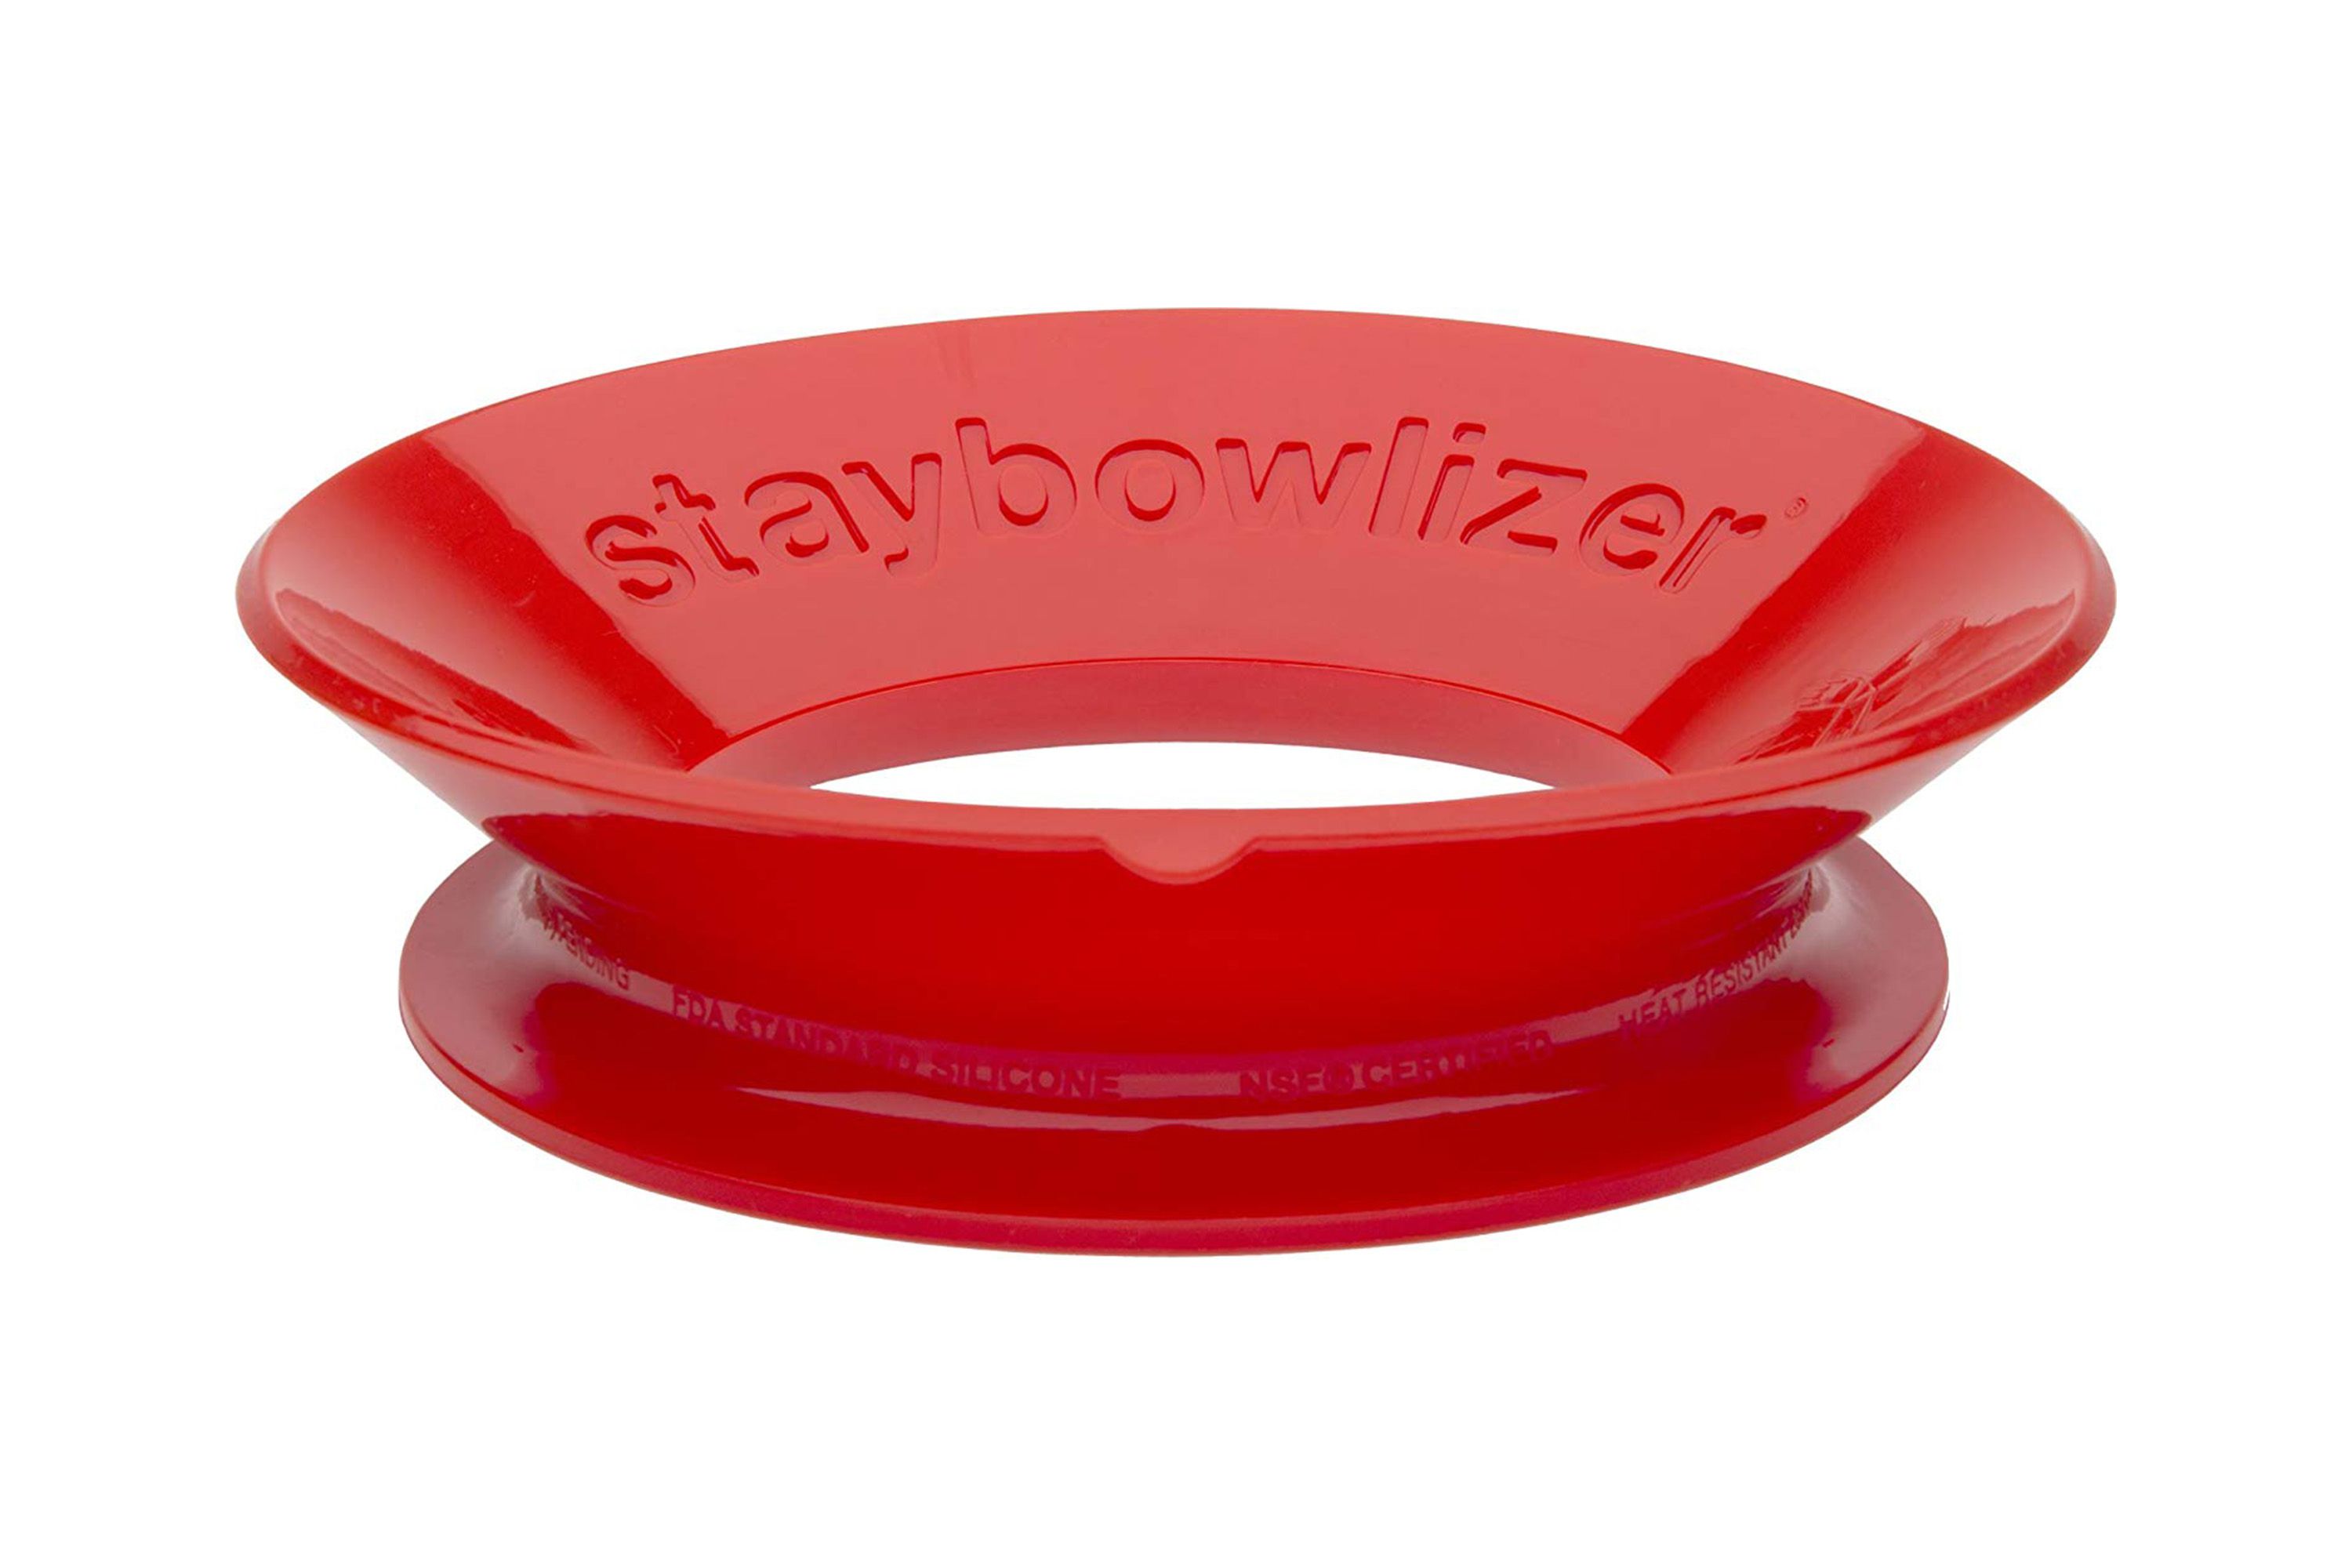 Ein roter Staybowlizer